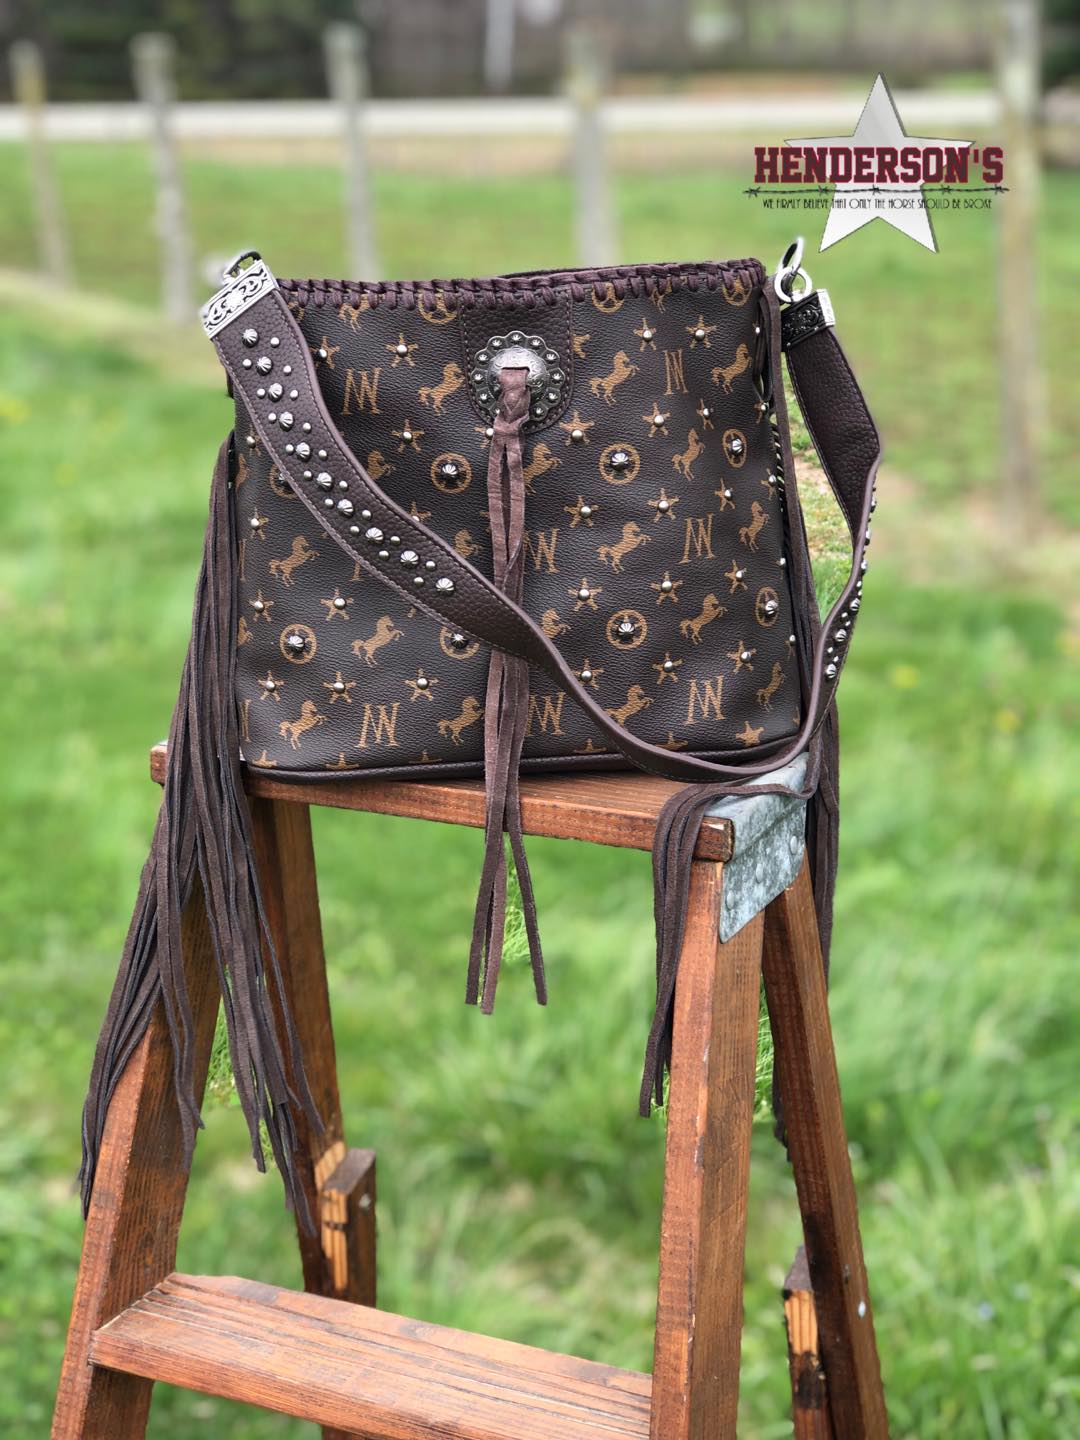 Billet Strap Bag - Cowboy Boot Purse - Leather Riding Bag - Saddle Purse - Horse Purse